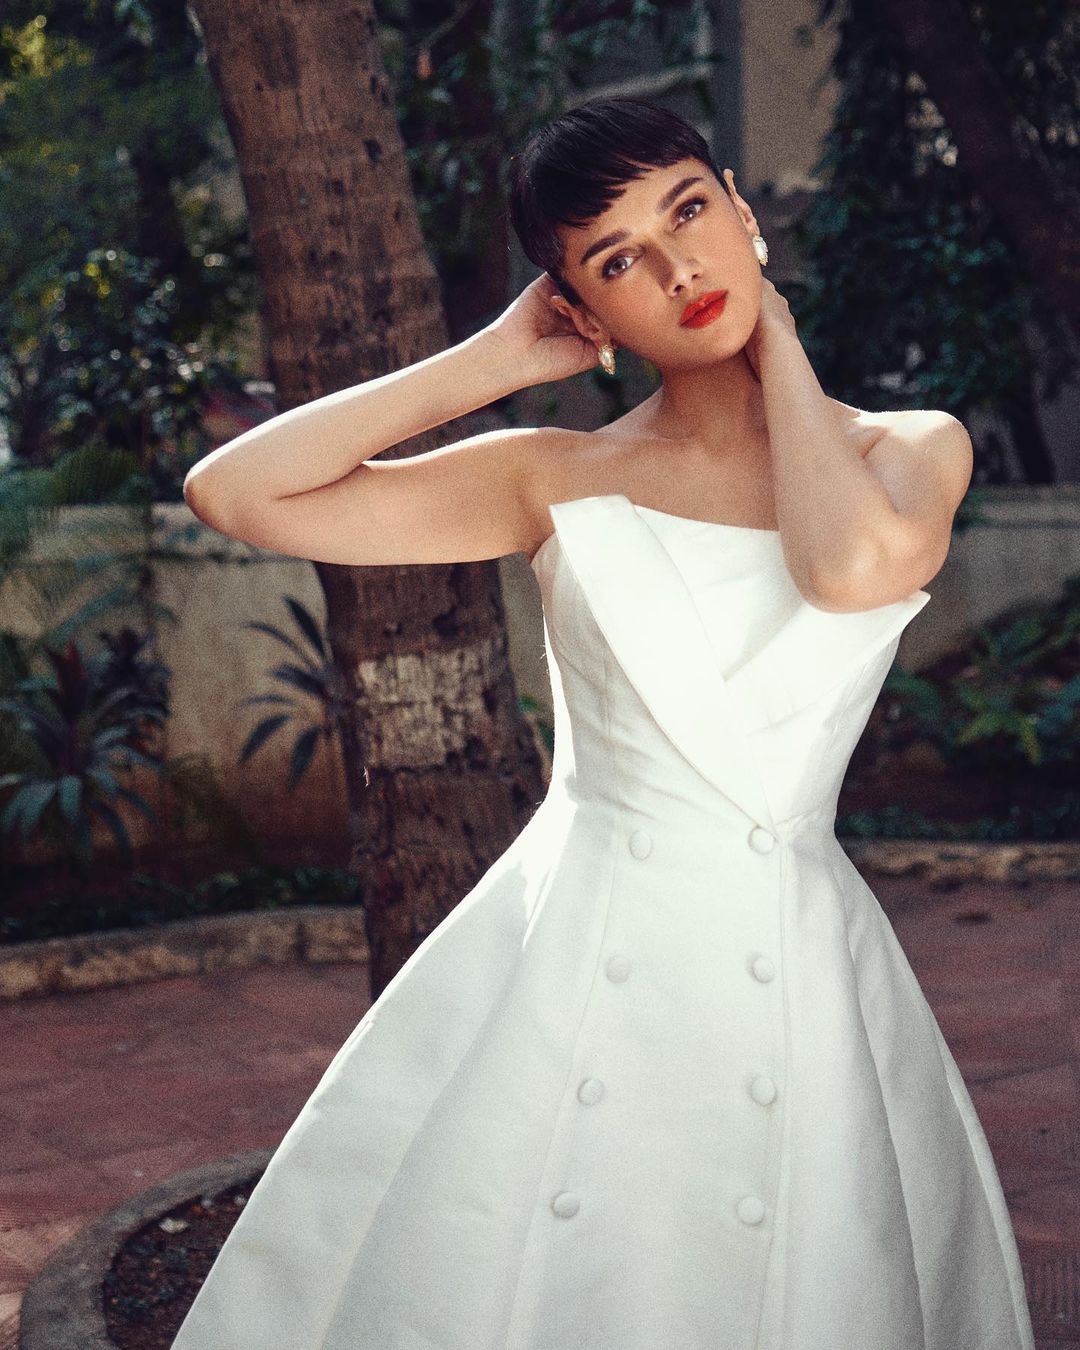 aditi-rao-hydari-gorgeous-looks-in-amazing-white-dress